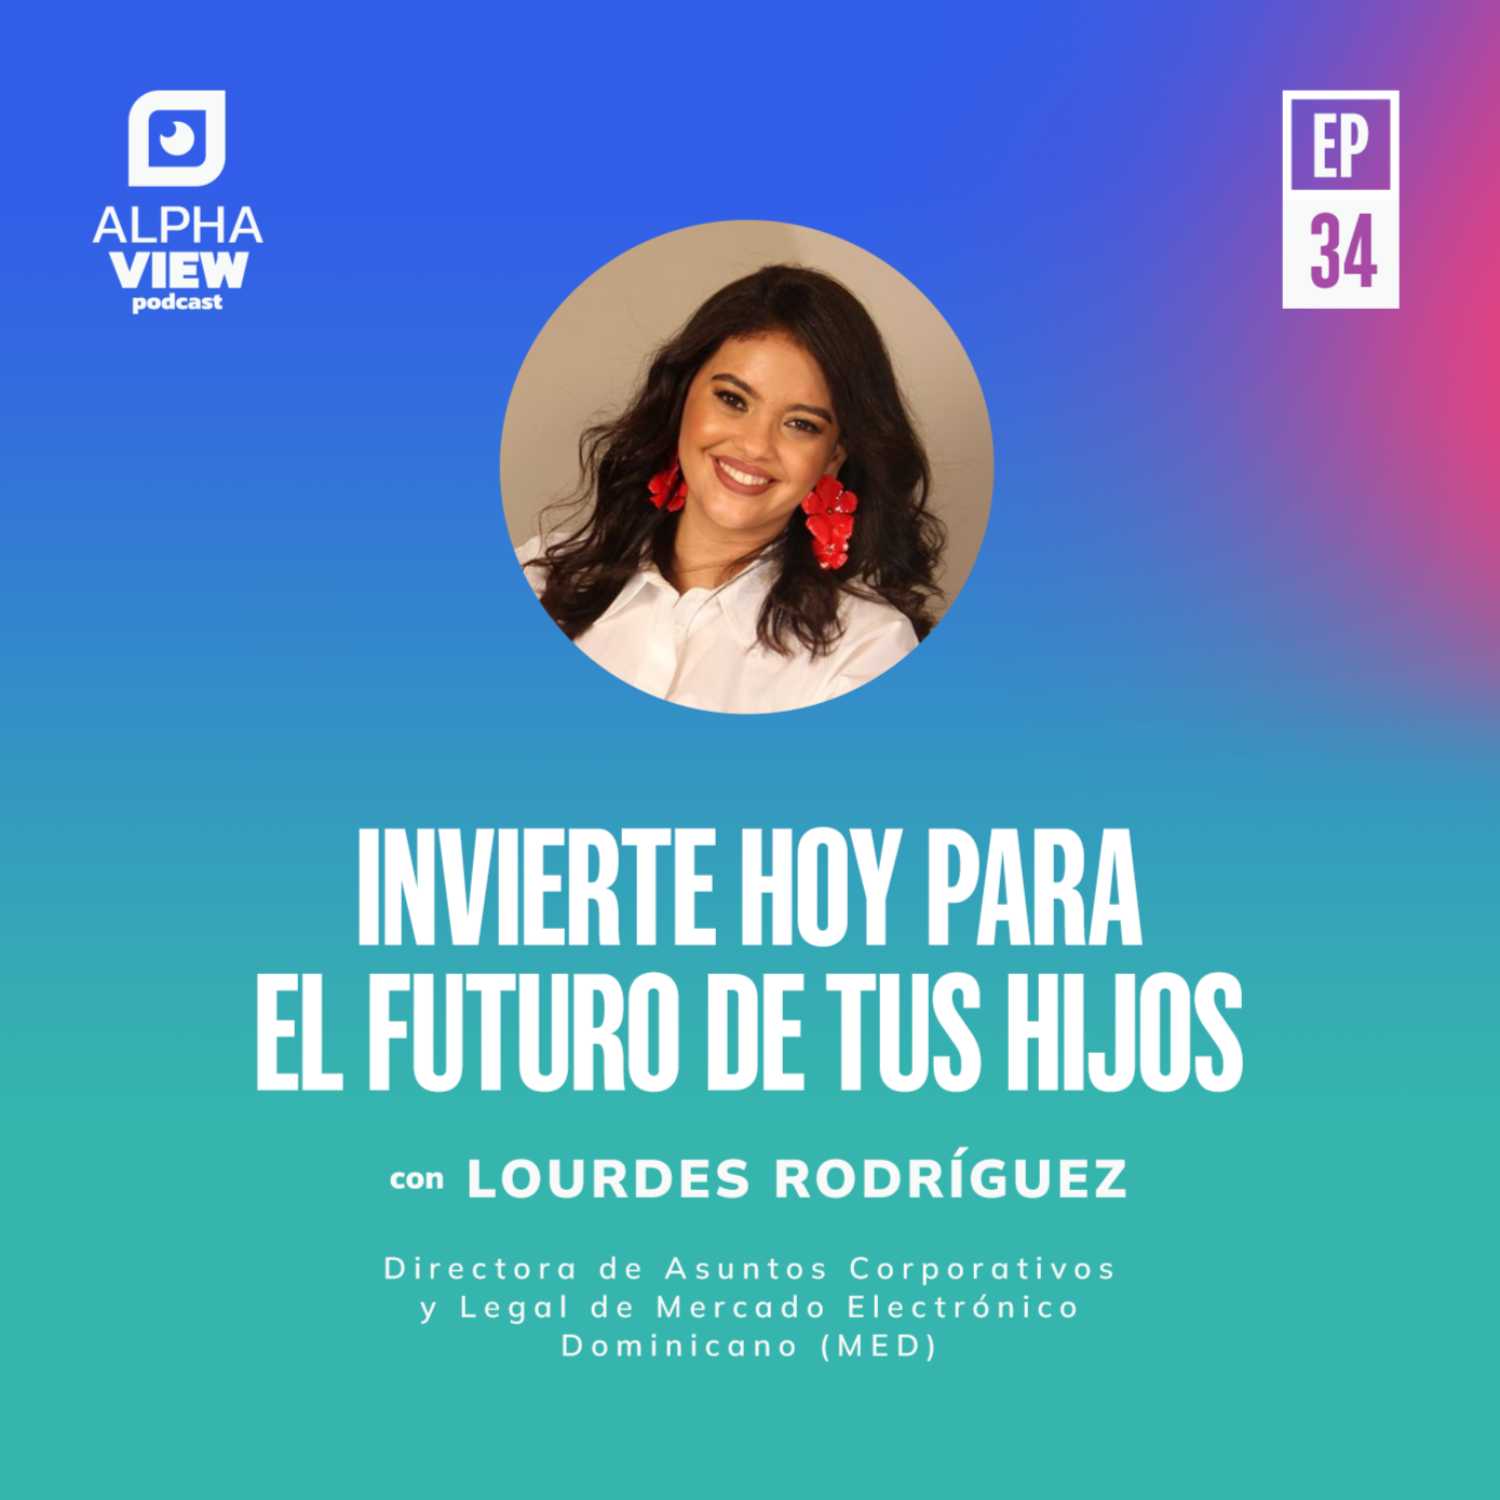 "Invierte hoy para el futuro de tus hijos" con Lourdes Rodríguez